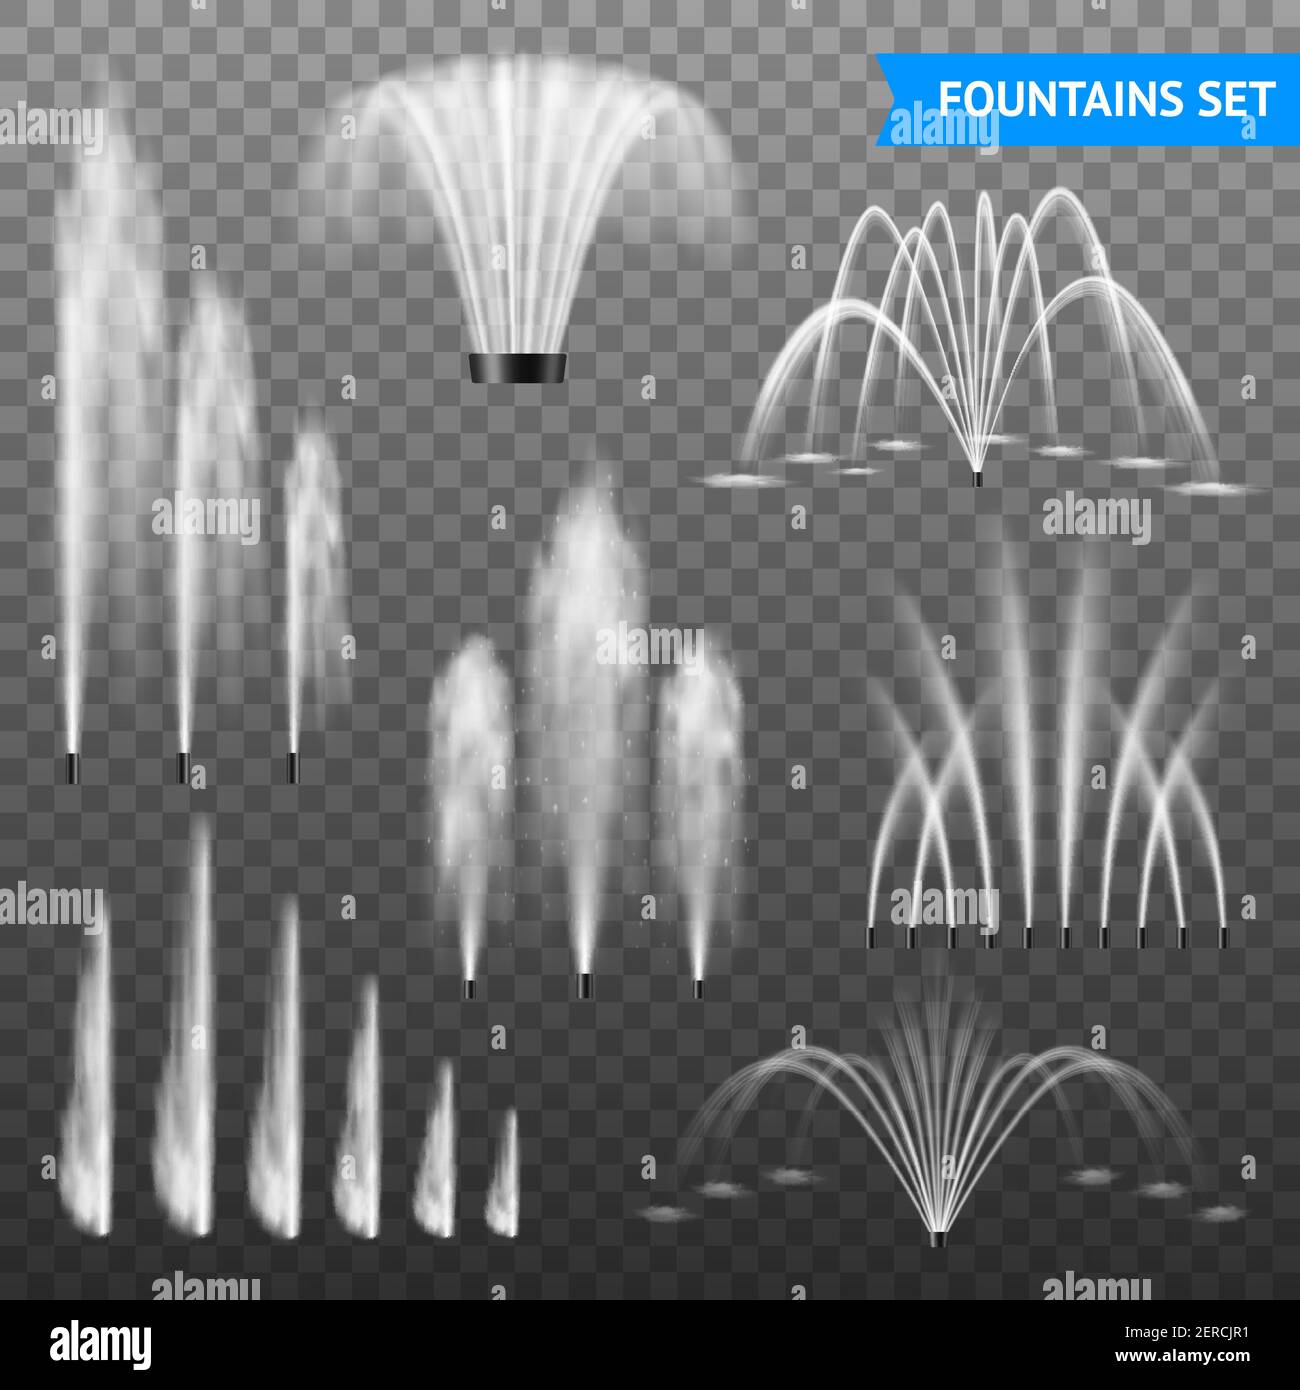 Dekorative Außenbrunnen Jet Set von 7 verschiedenen Formen Größenbereich vor transparenter Hintergrunddarstellung Stock Vektor